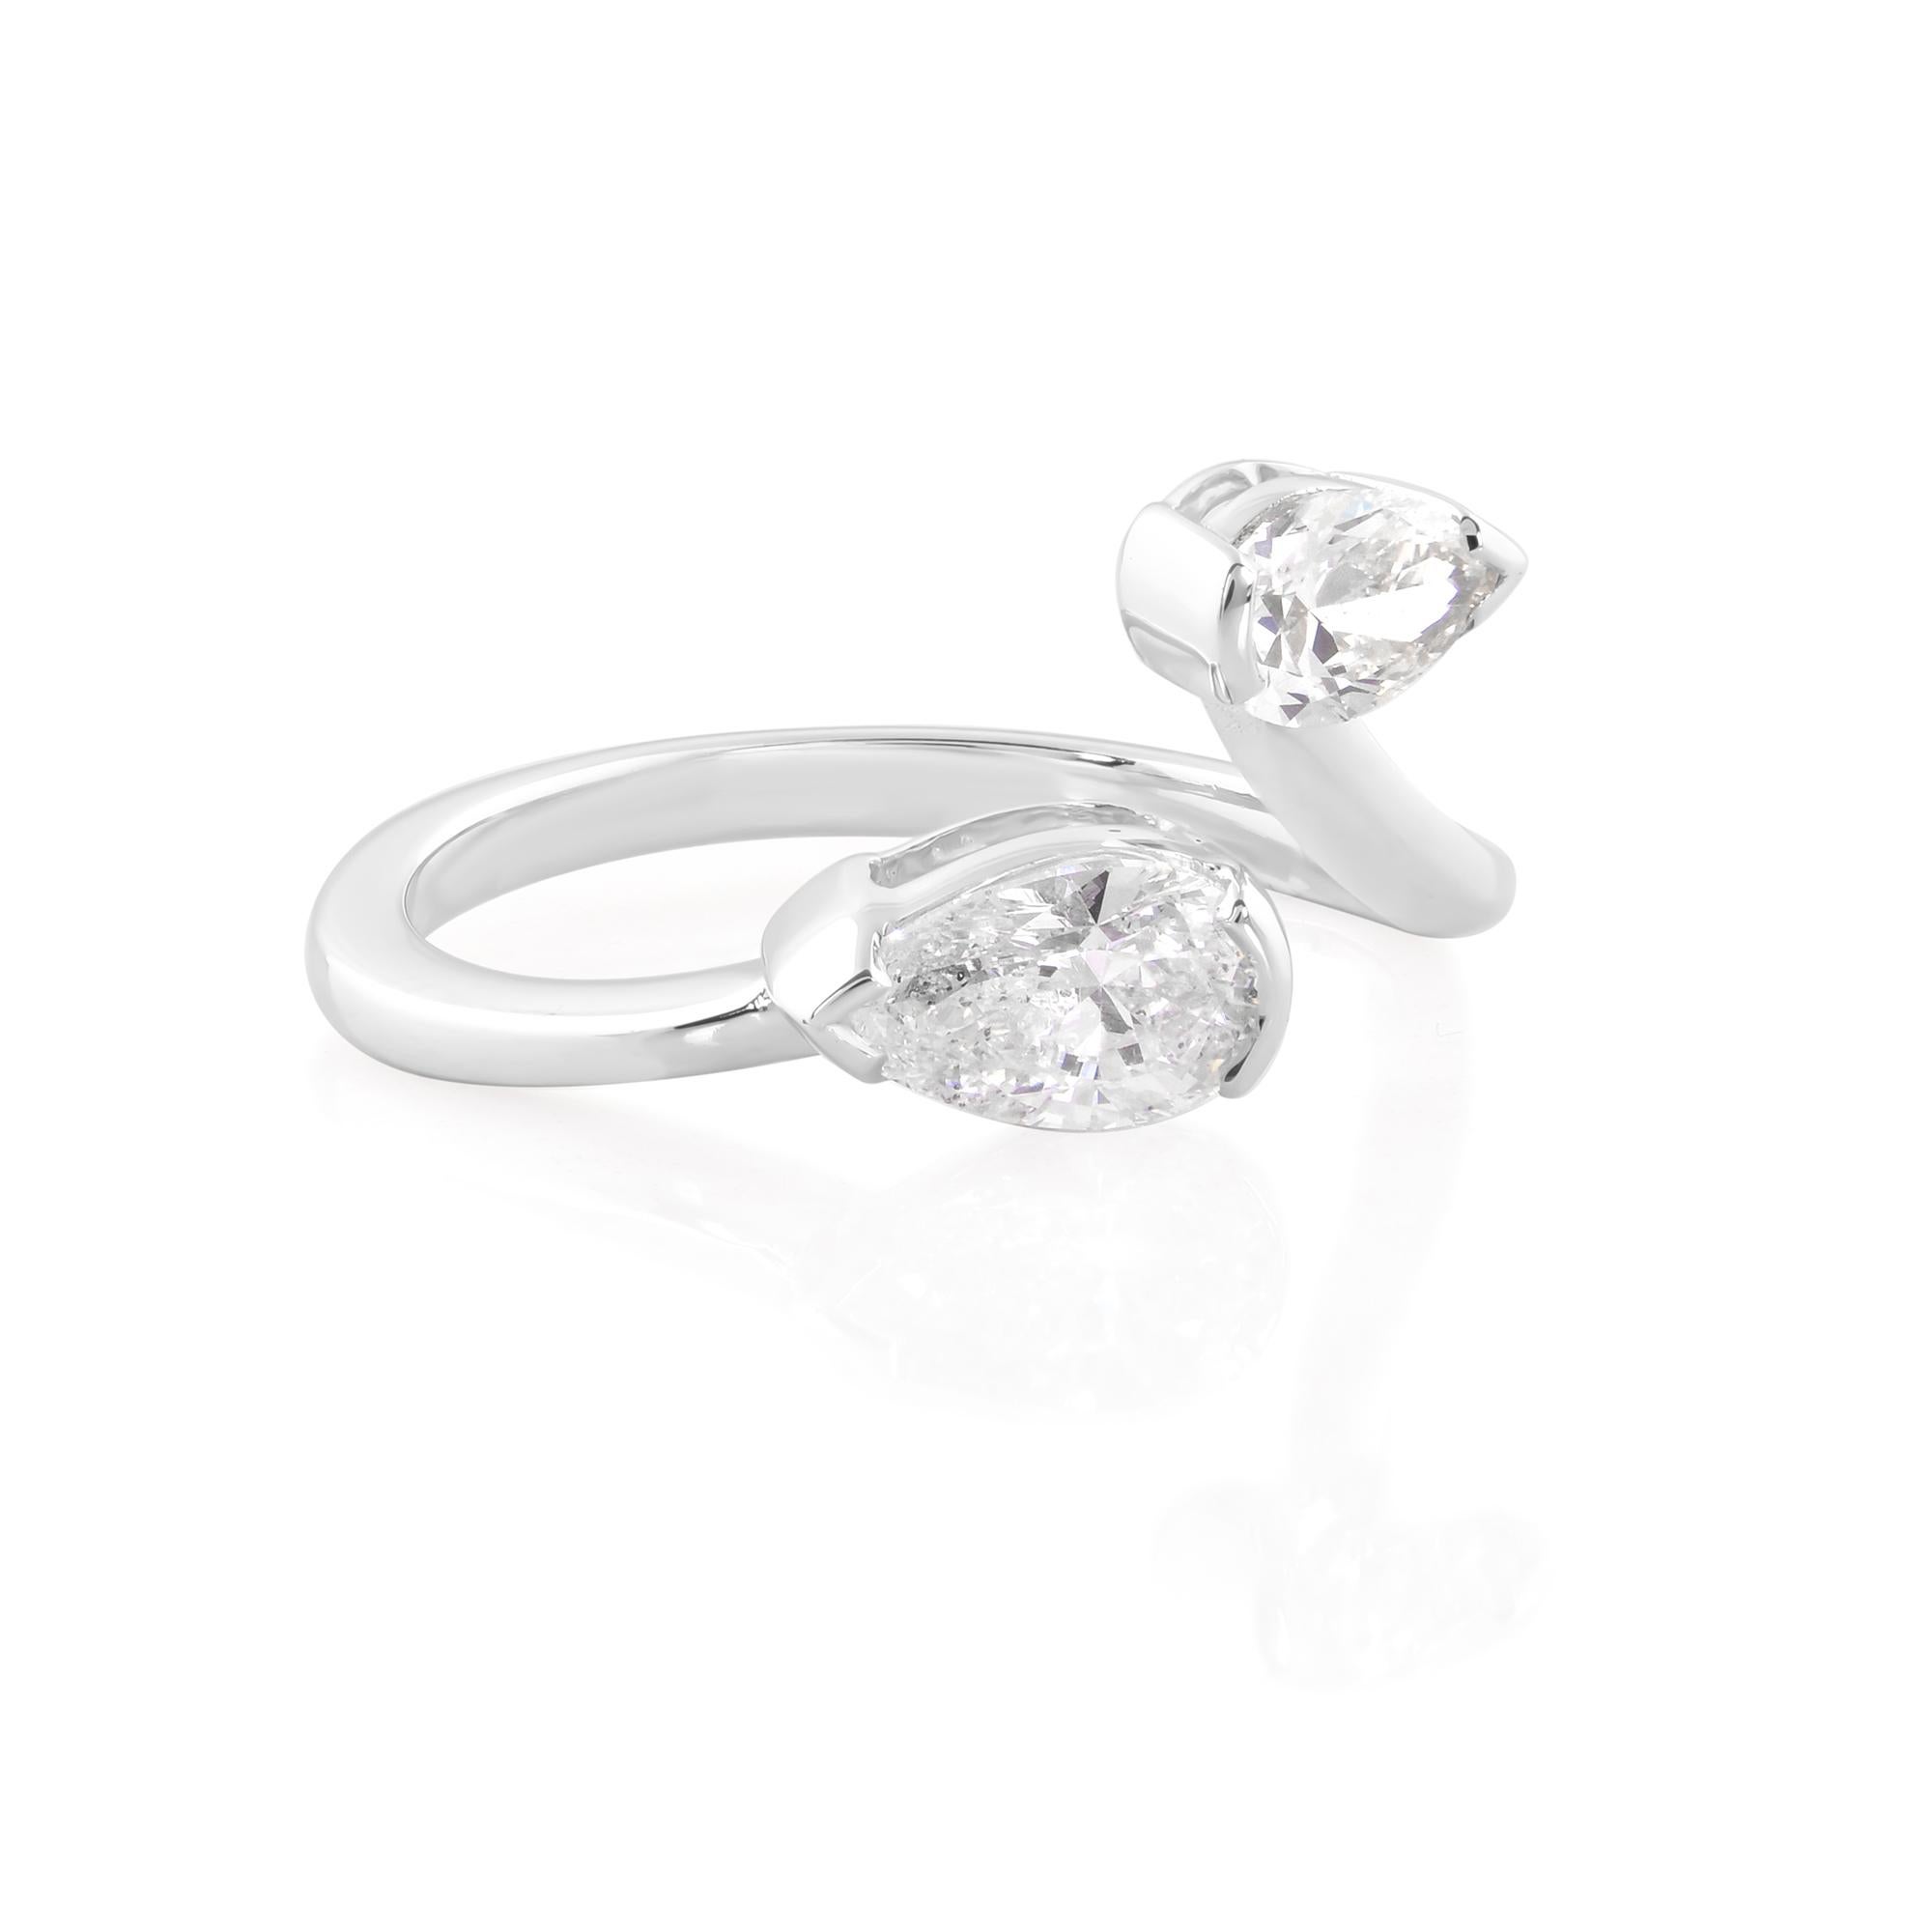 In der Mitte des Rings glänzt ein atemberaubender birnenförmiger Diamant, der sich durch seine makellose Reinheit und Brillanz auszeichnet. Seine einzigartige Silhouette strahlt eine raffinierte Schönheit aus, die das Licht aus jedem Winkel einfängt